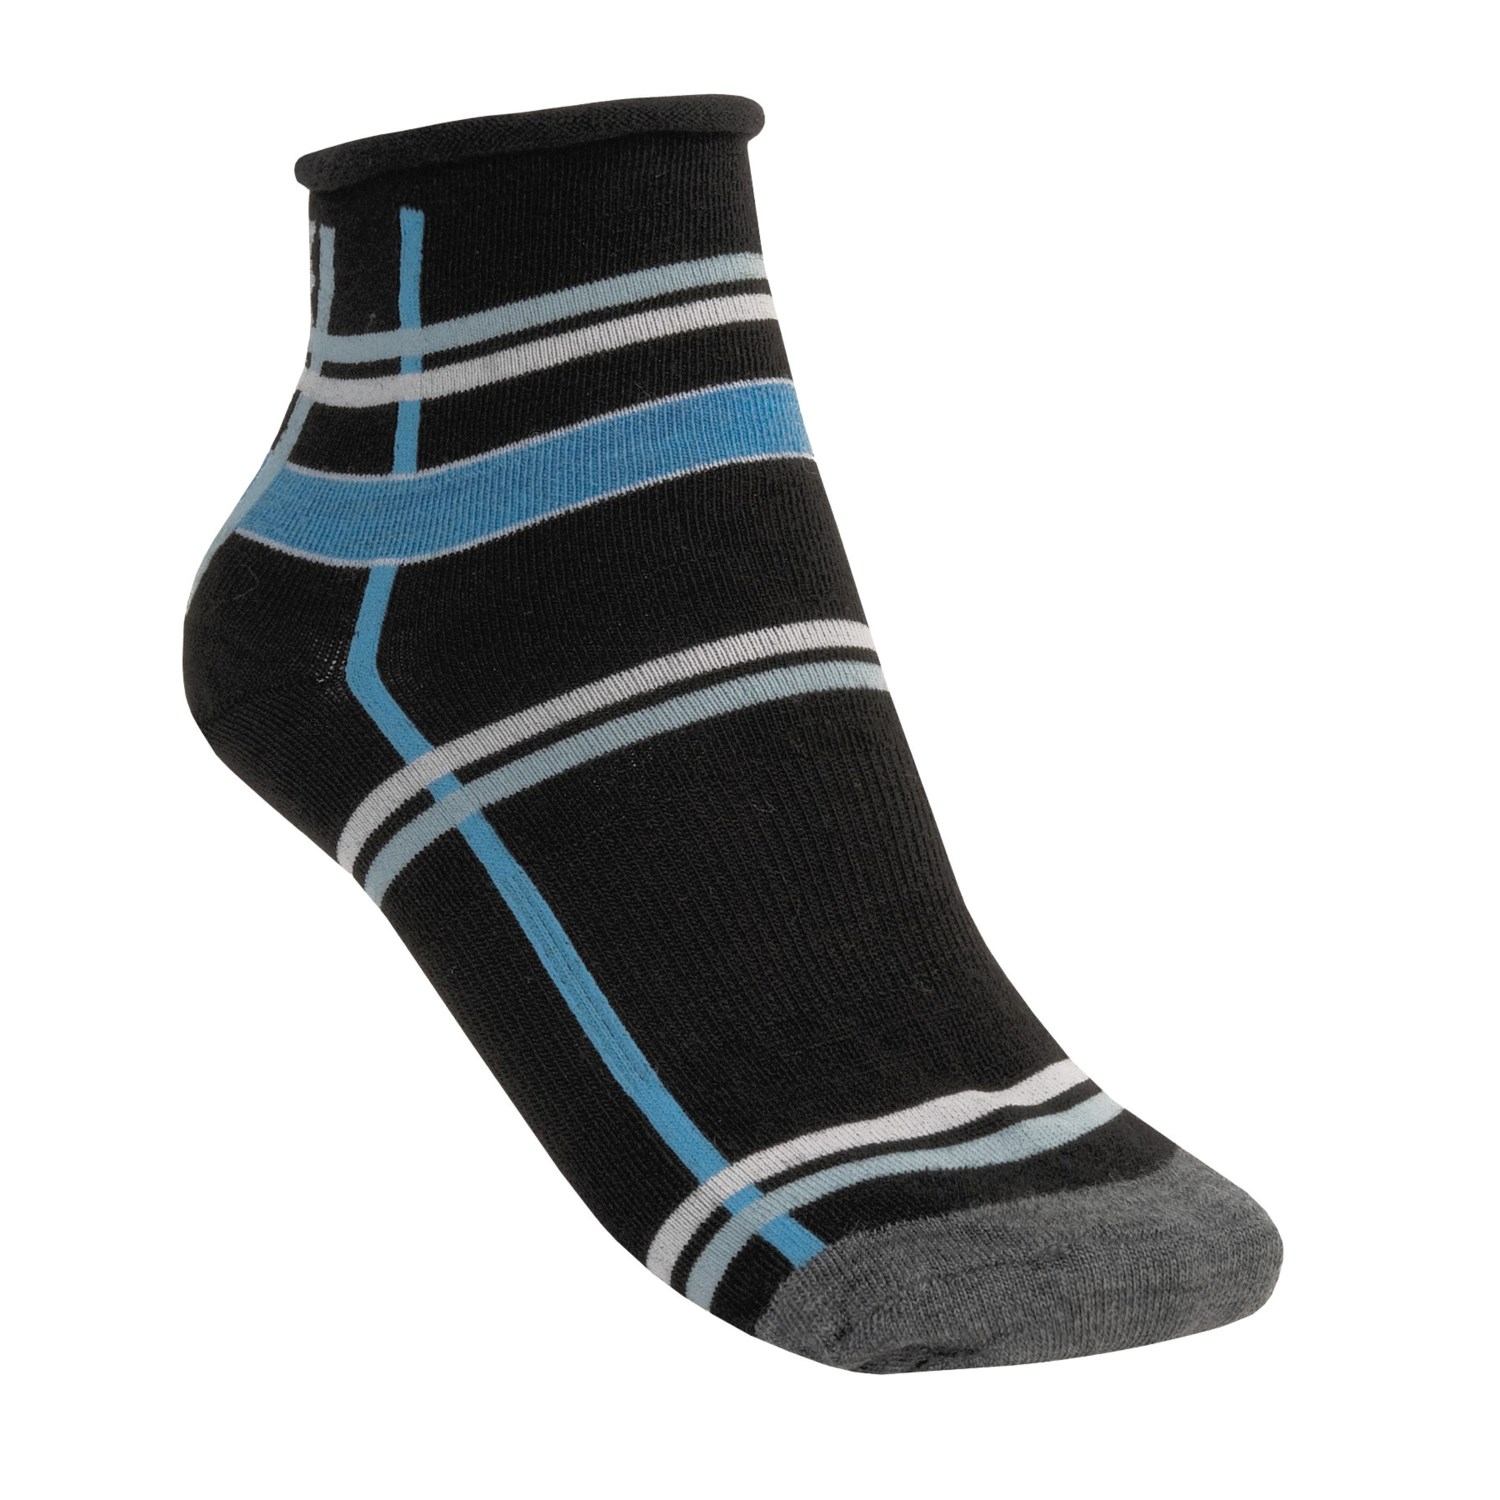 SmartWool Modras Ankle Socks (For Women) 2887C